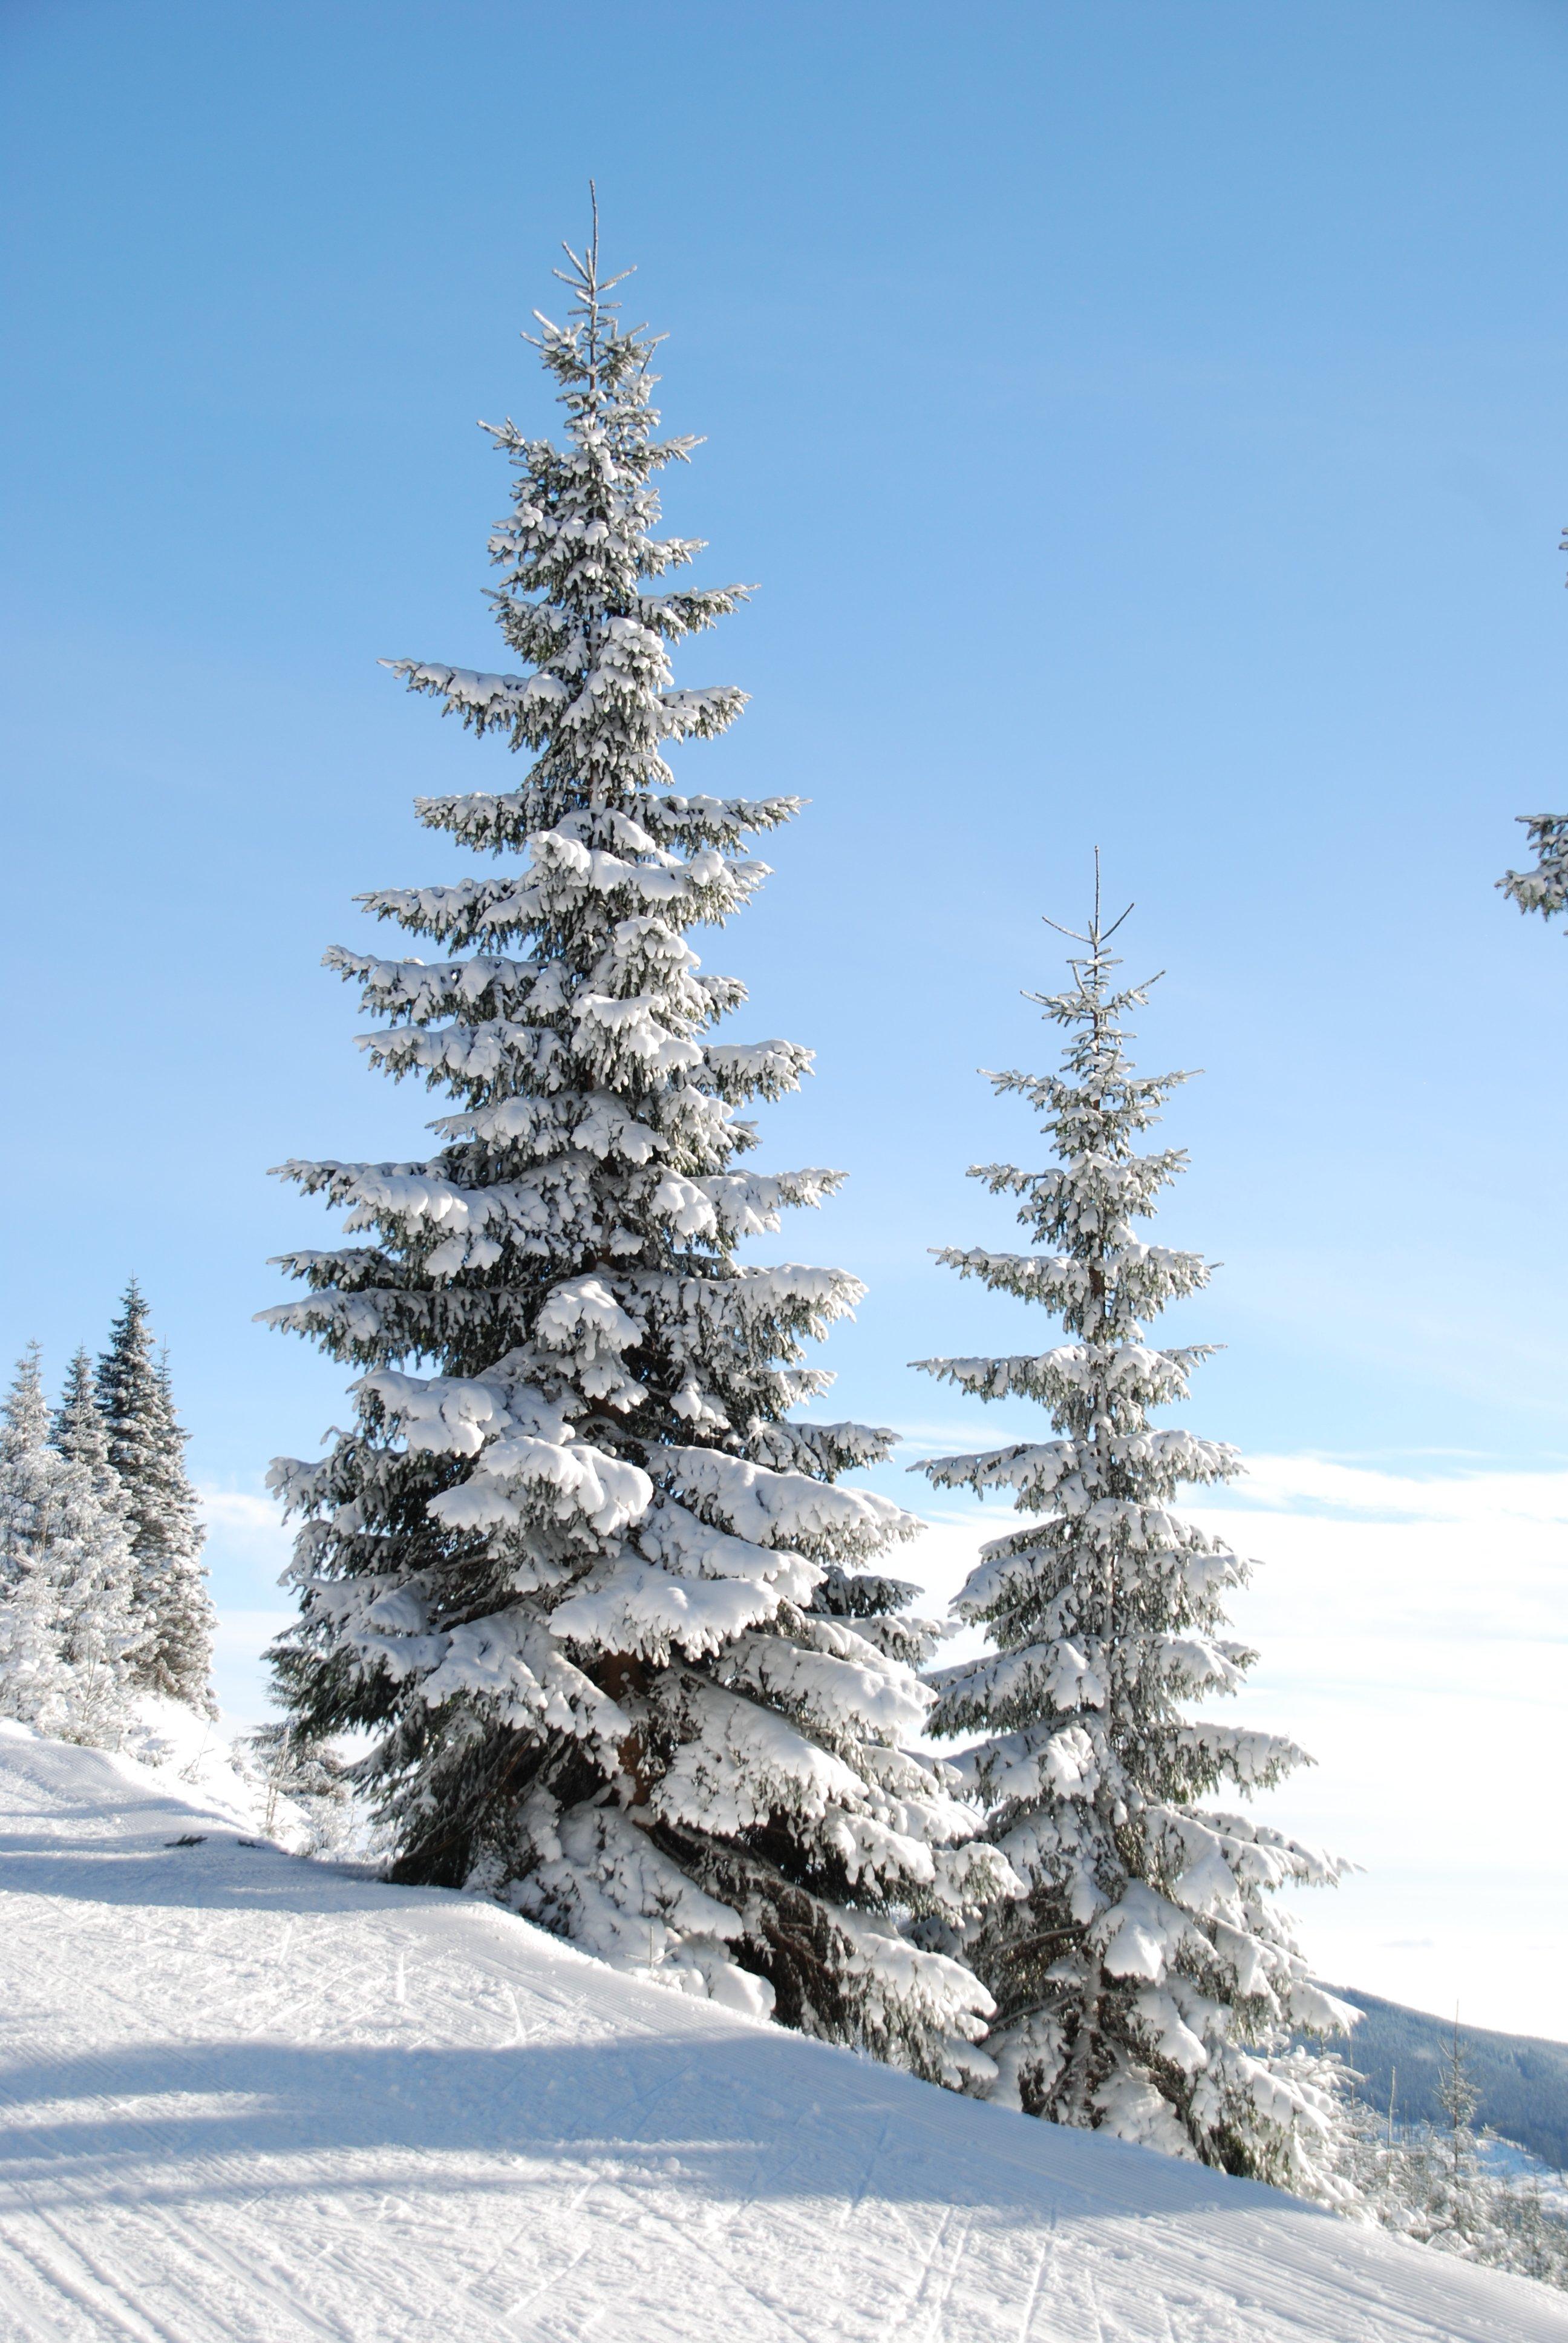 картинки : филиал, гора, снег, зима, Погода, Пихта, Рождественская елка,  время года, Хвойное дерево, зимний вид спорта, Ден, Ель, Лиственница,  Замораживание, Древесное растение, Наземный завод 2592x3872 - - 1156756 -  красивые картинки - PxHere